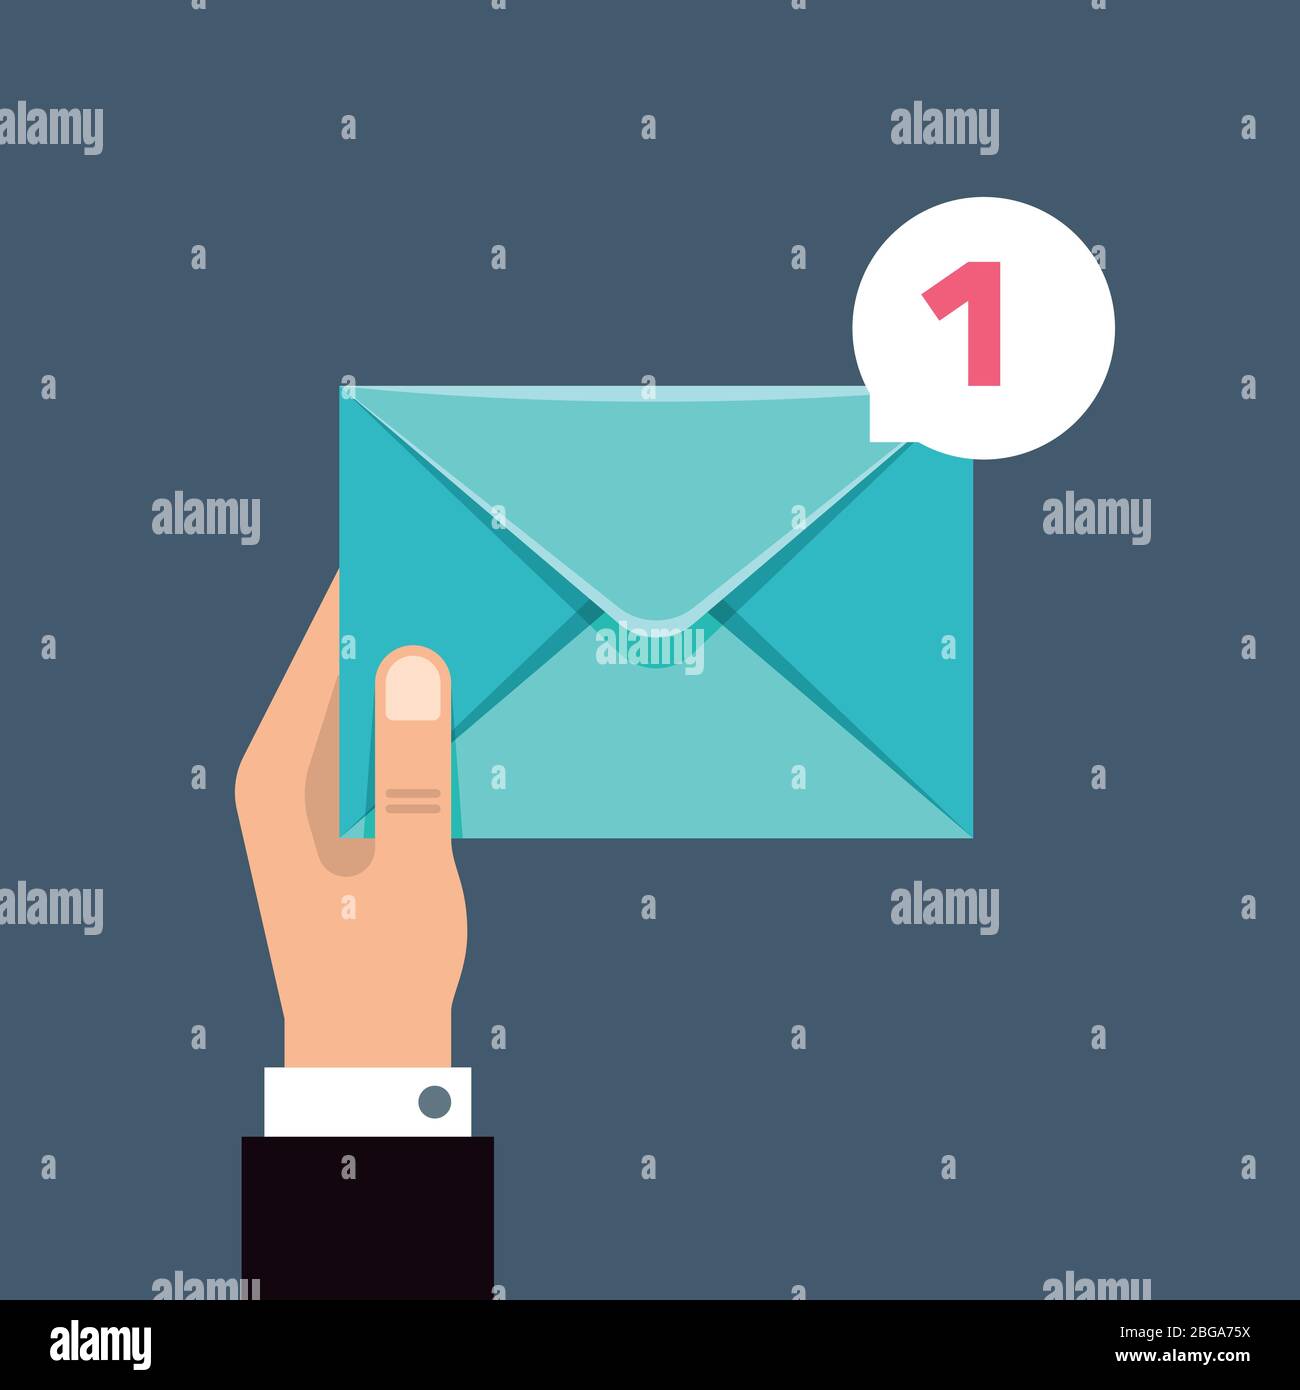 Empfang von Nachrichten Vektor Konzept mit Umschlag in der Hand des Benutzers. Briefumschlag, E-Mail-Empfang, Abbildung Stock Vektor